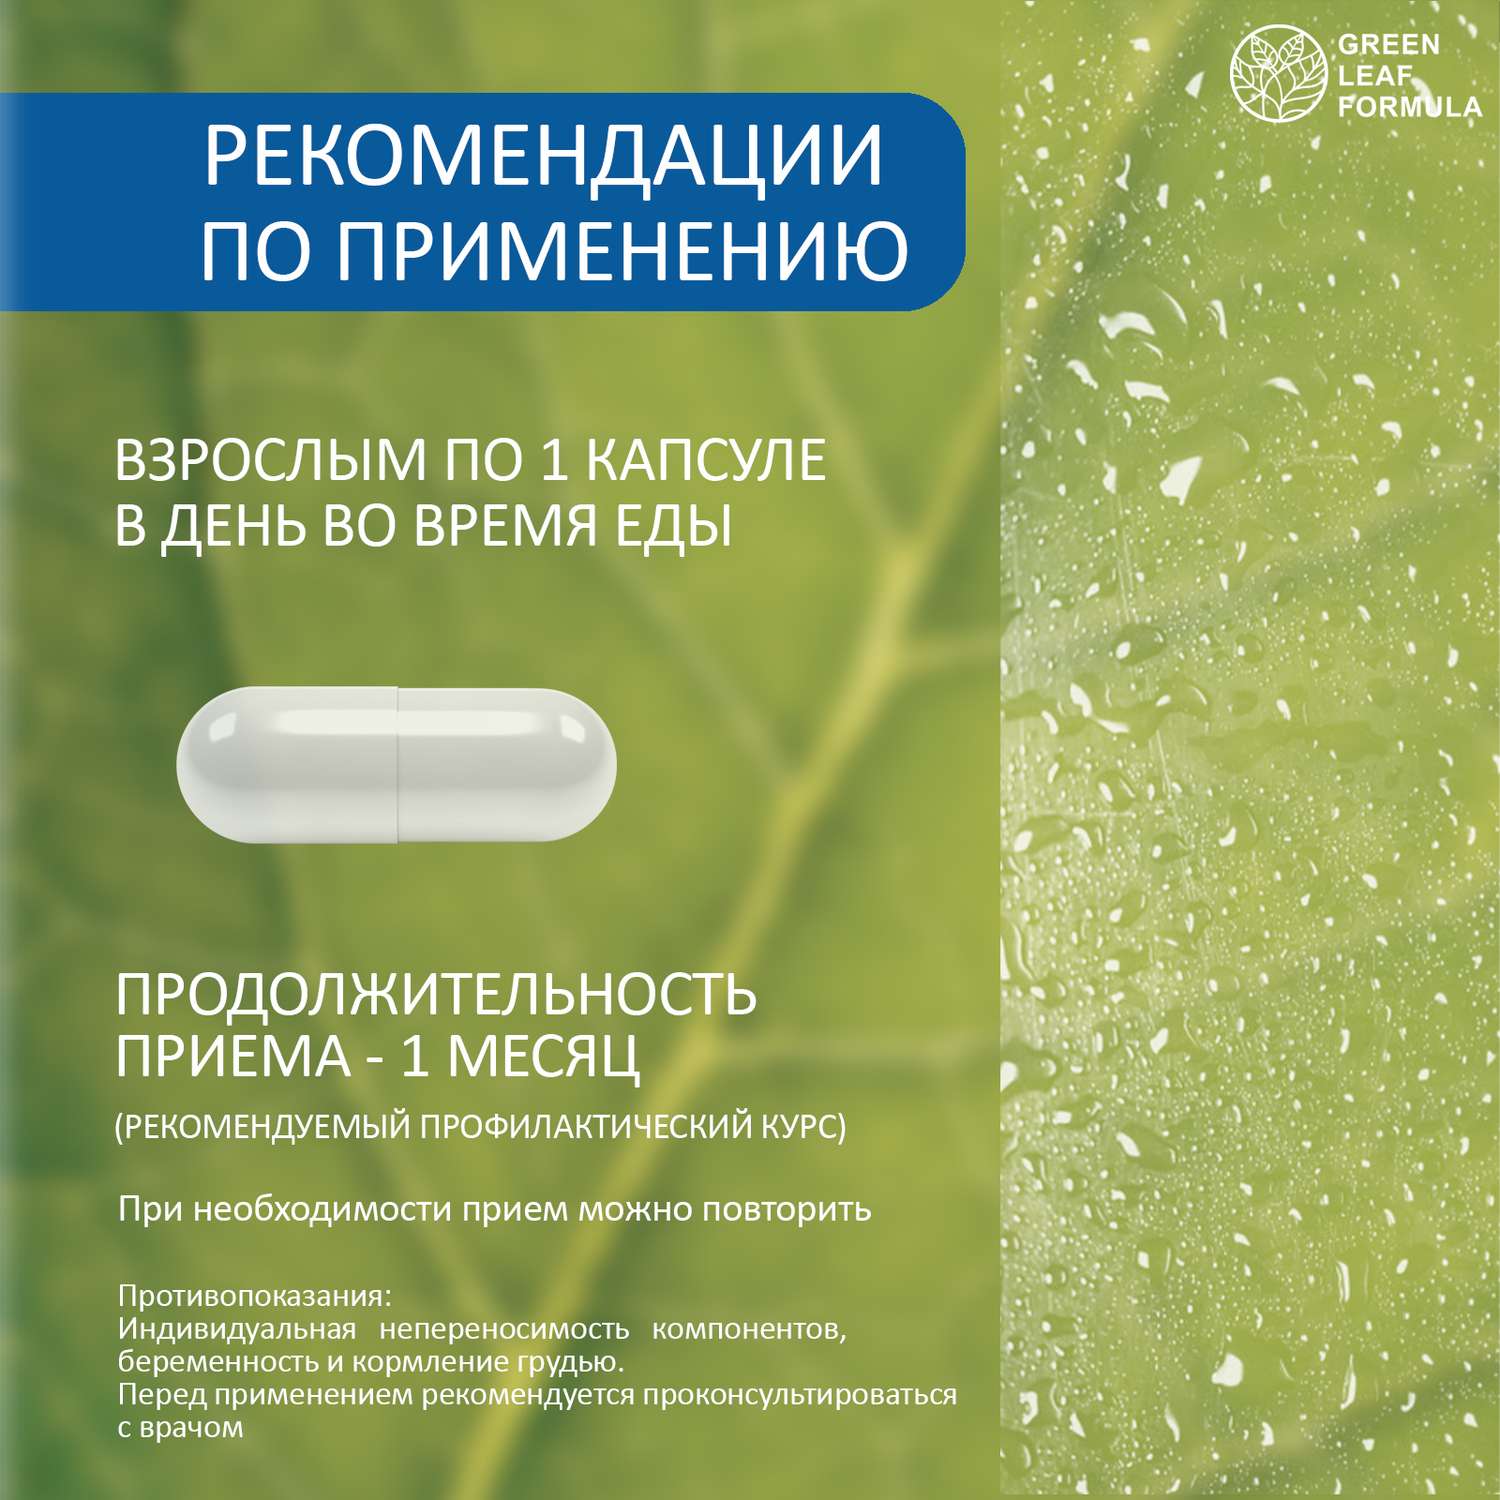 Витамины для нервной системы Green Leaf Formula триптофан 5 HTP 100 мг от стресса и депрессии для мозга для настроения 2 банки - фото 9